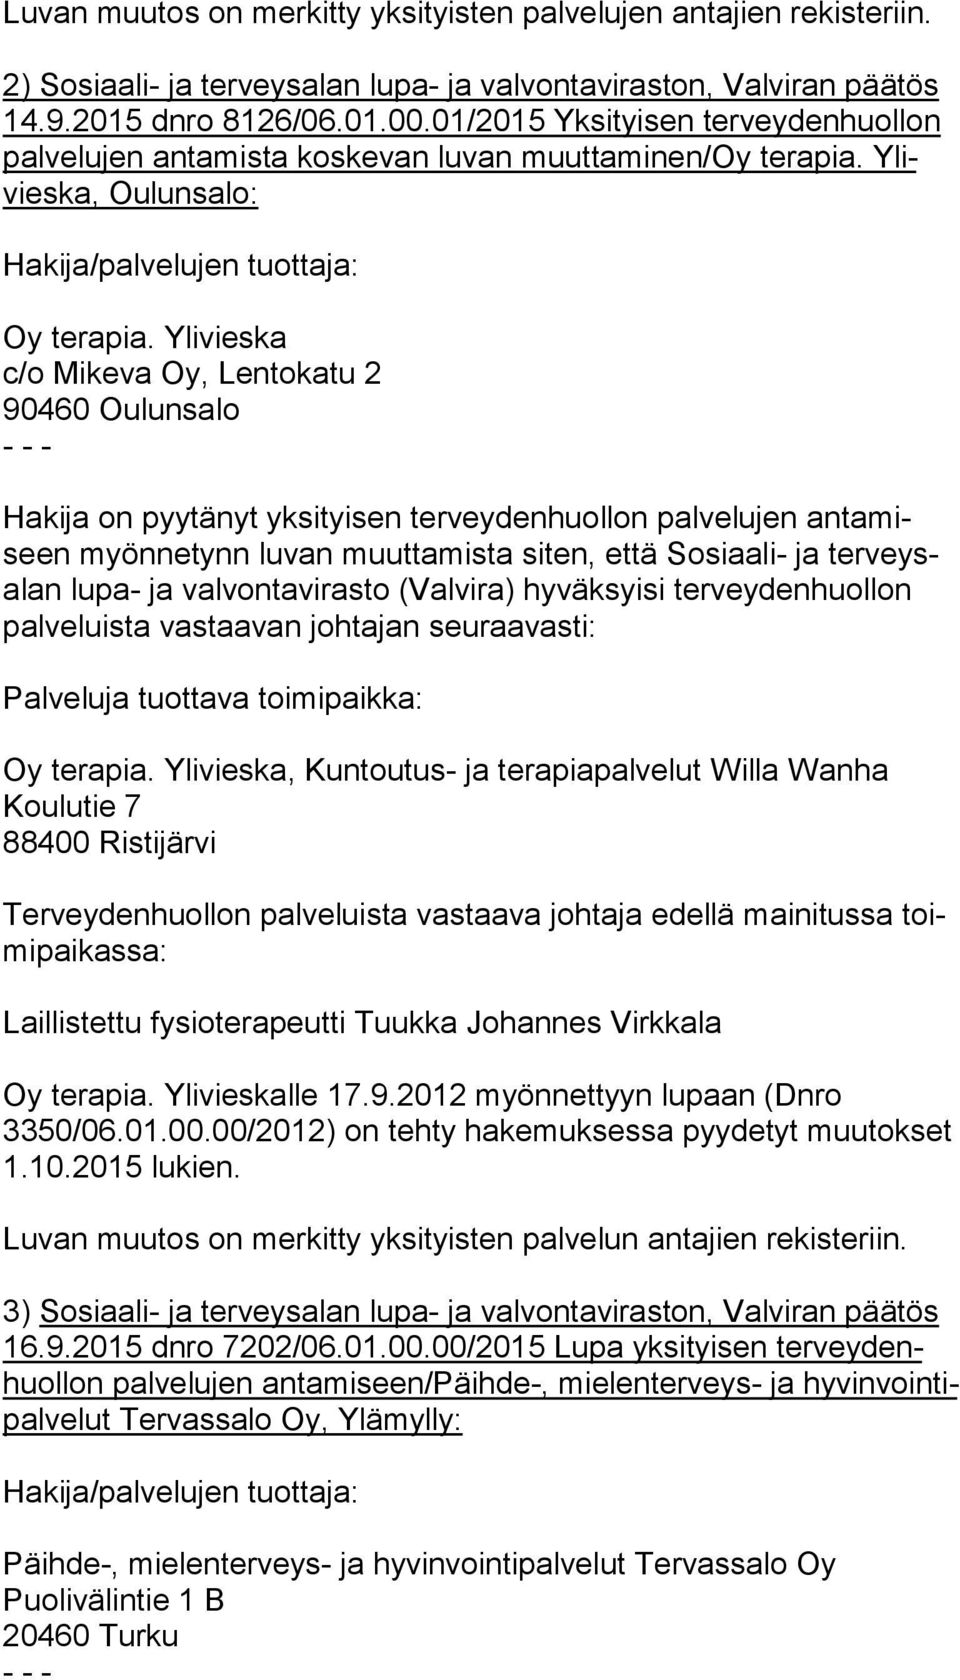 Ylivieska c/o Mikeva Oy, Lentokatu 2 90460 Oulunsalo - - - Hakija on pyytänyt yksityisen terveydenhuollon palvelujen an ta miseen myönnetynn luvan muuttamista siten, että Sosiaali- ja ter veysalan